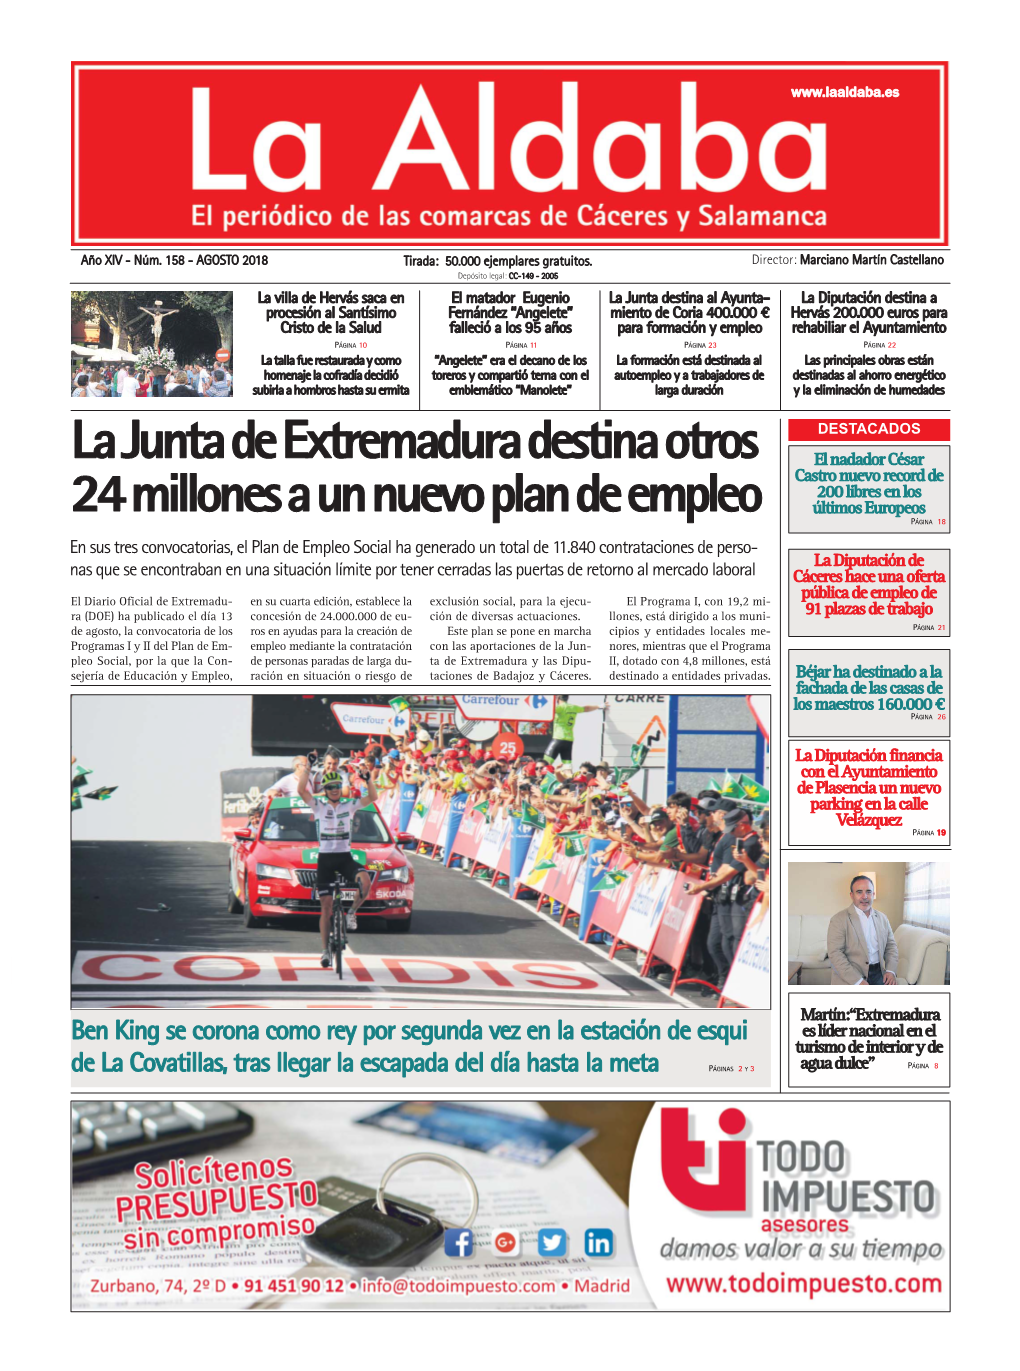 La Junta De Extremadura Destina Otros 24 Millones a Un Nuevo Plan